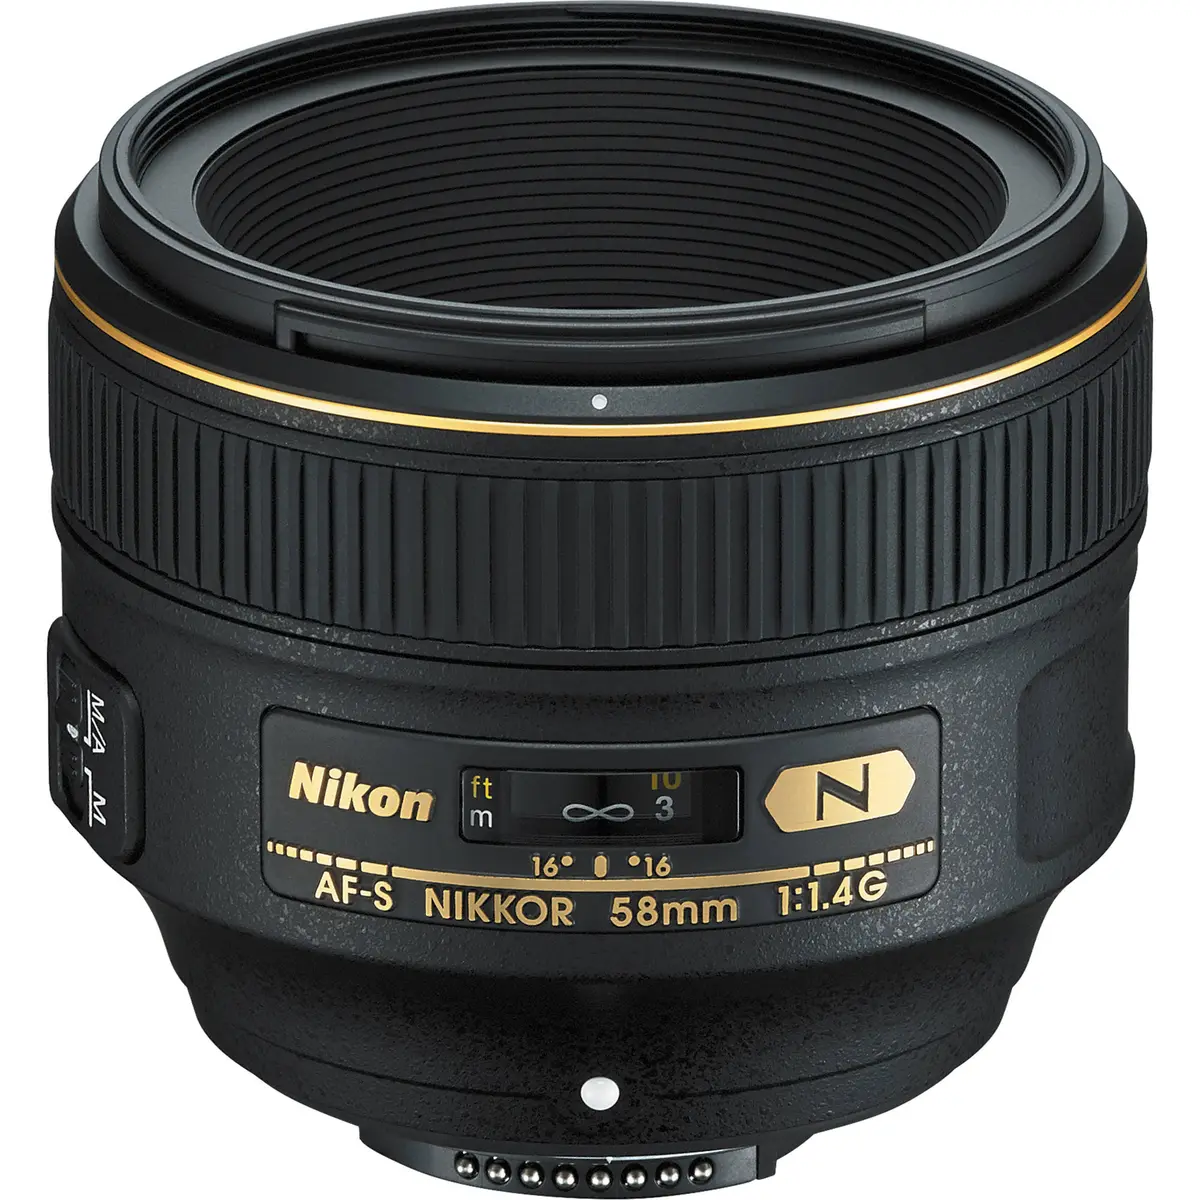 Main Image Nikon AF-S Nikkor 58mm f/1.4G